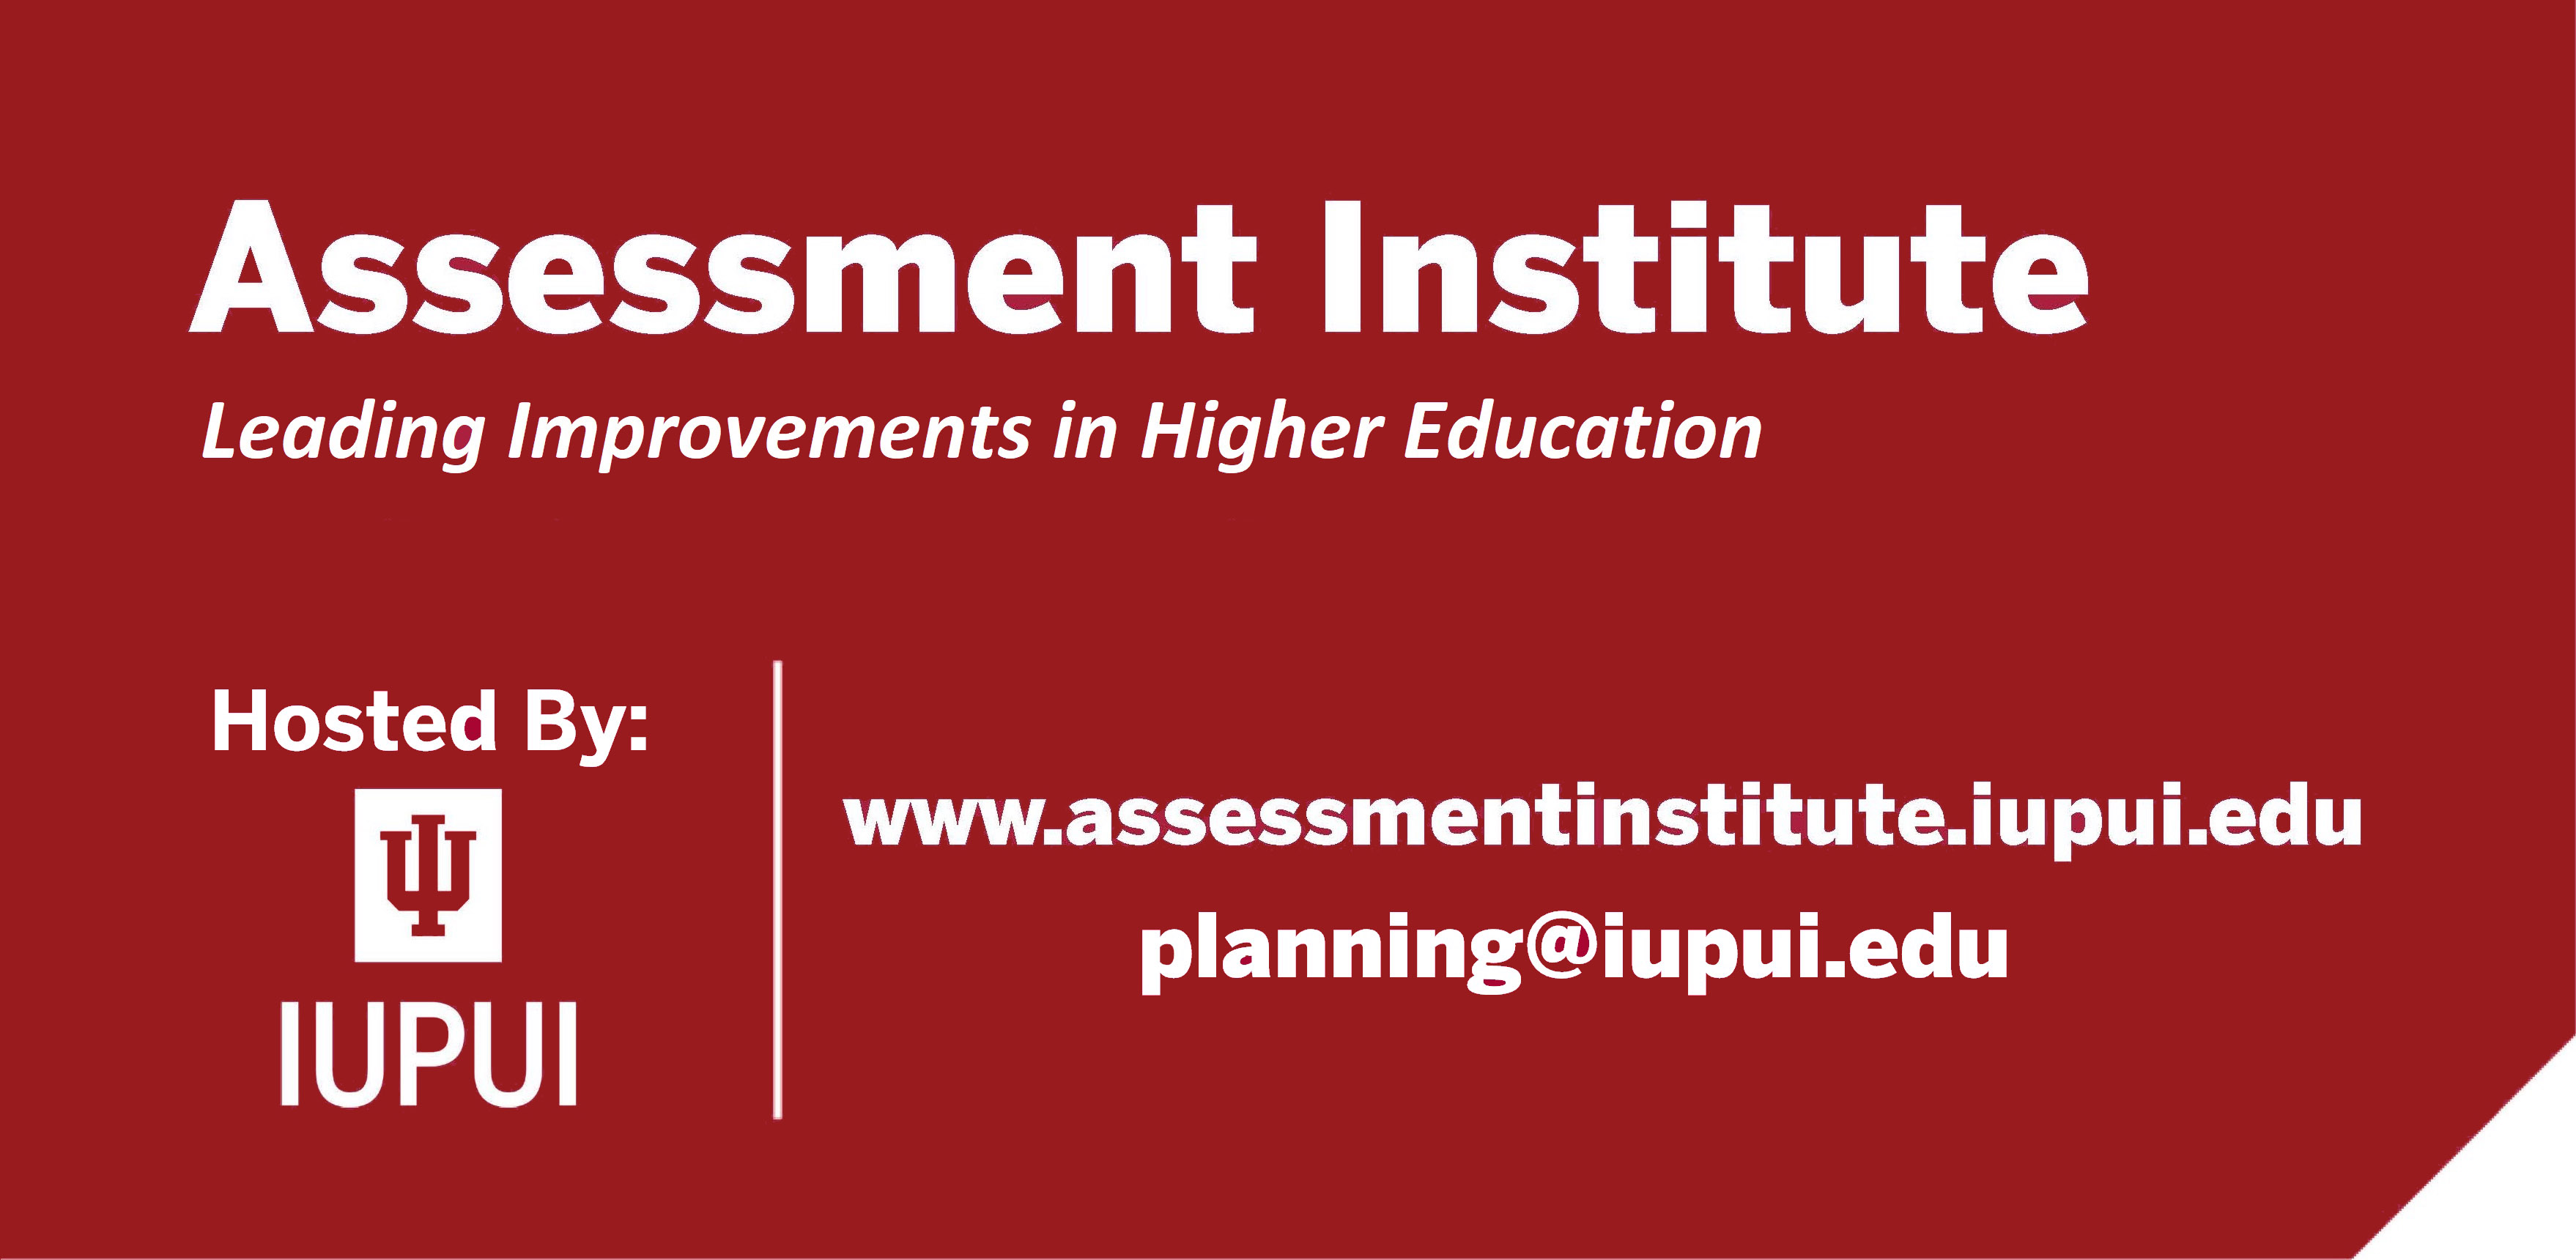 Assessment Institute